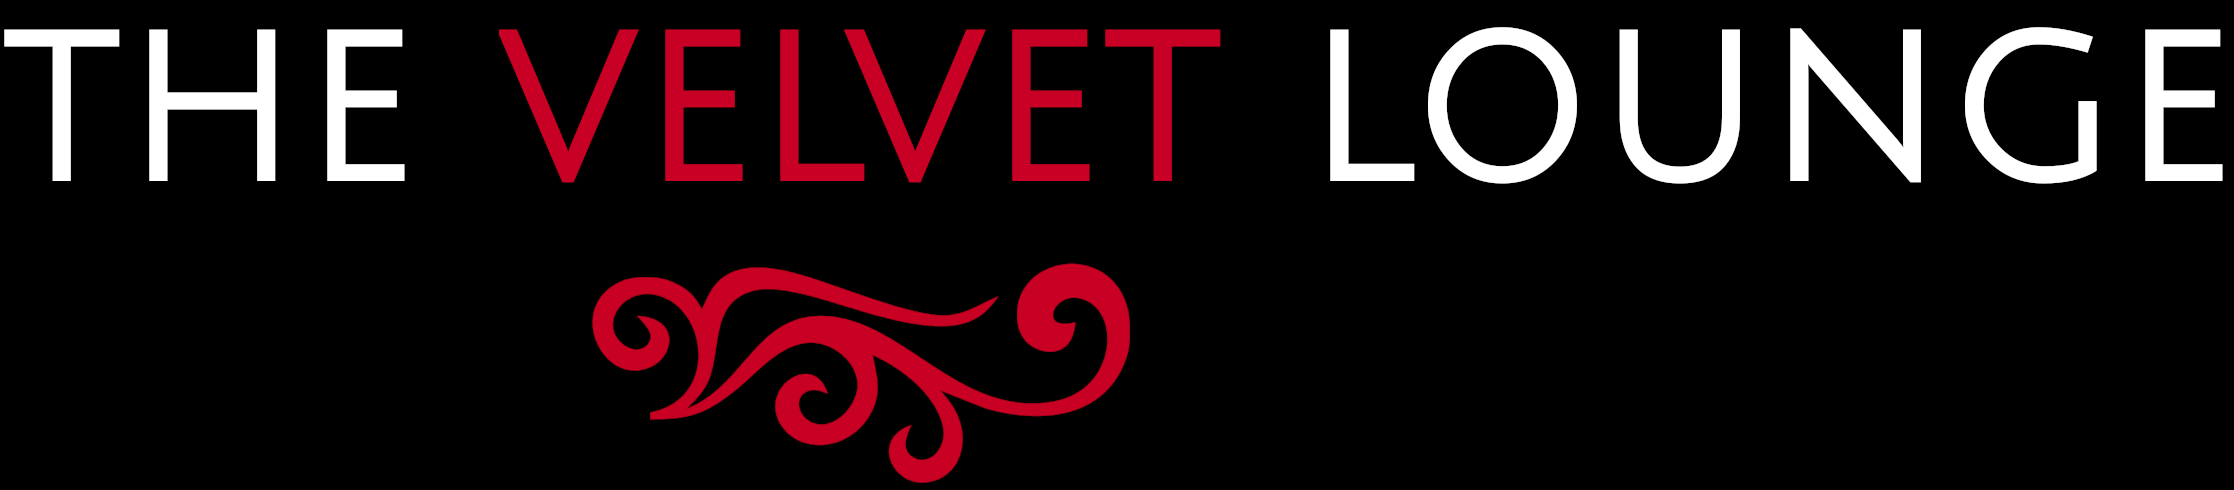 The Velvet Lounge logo